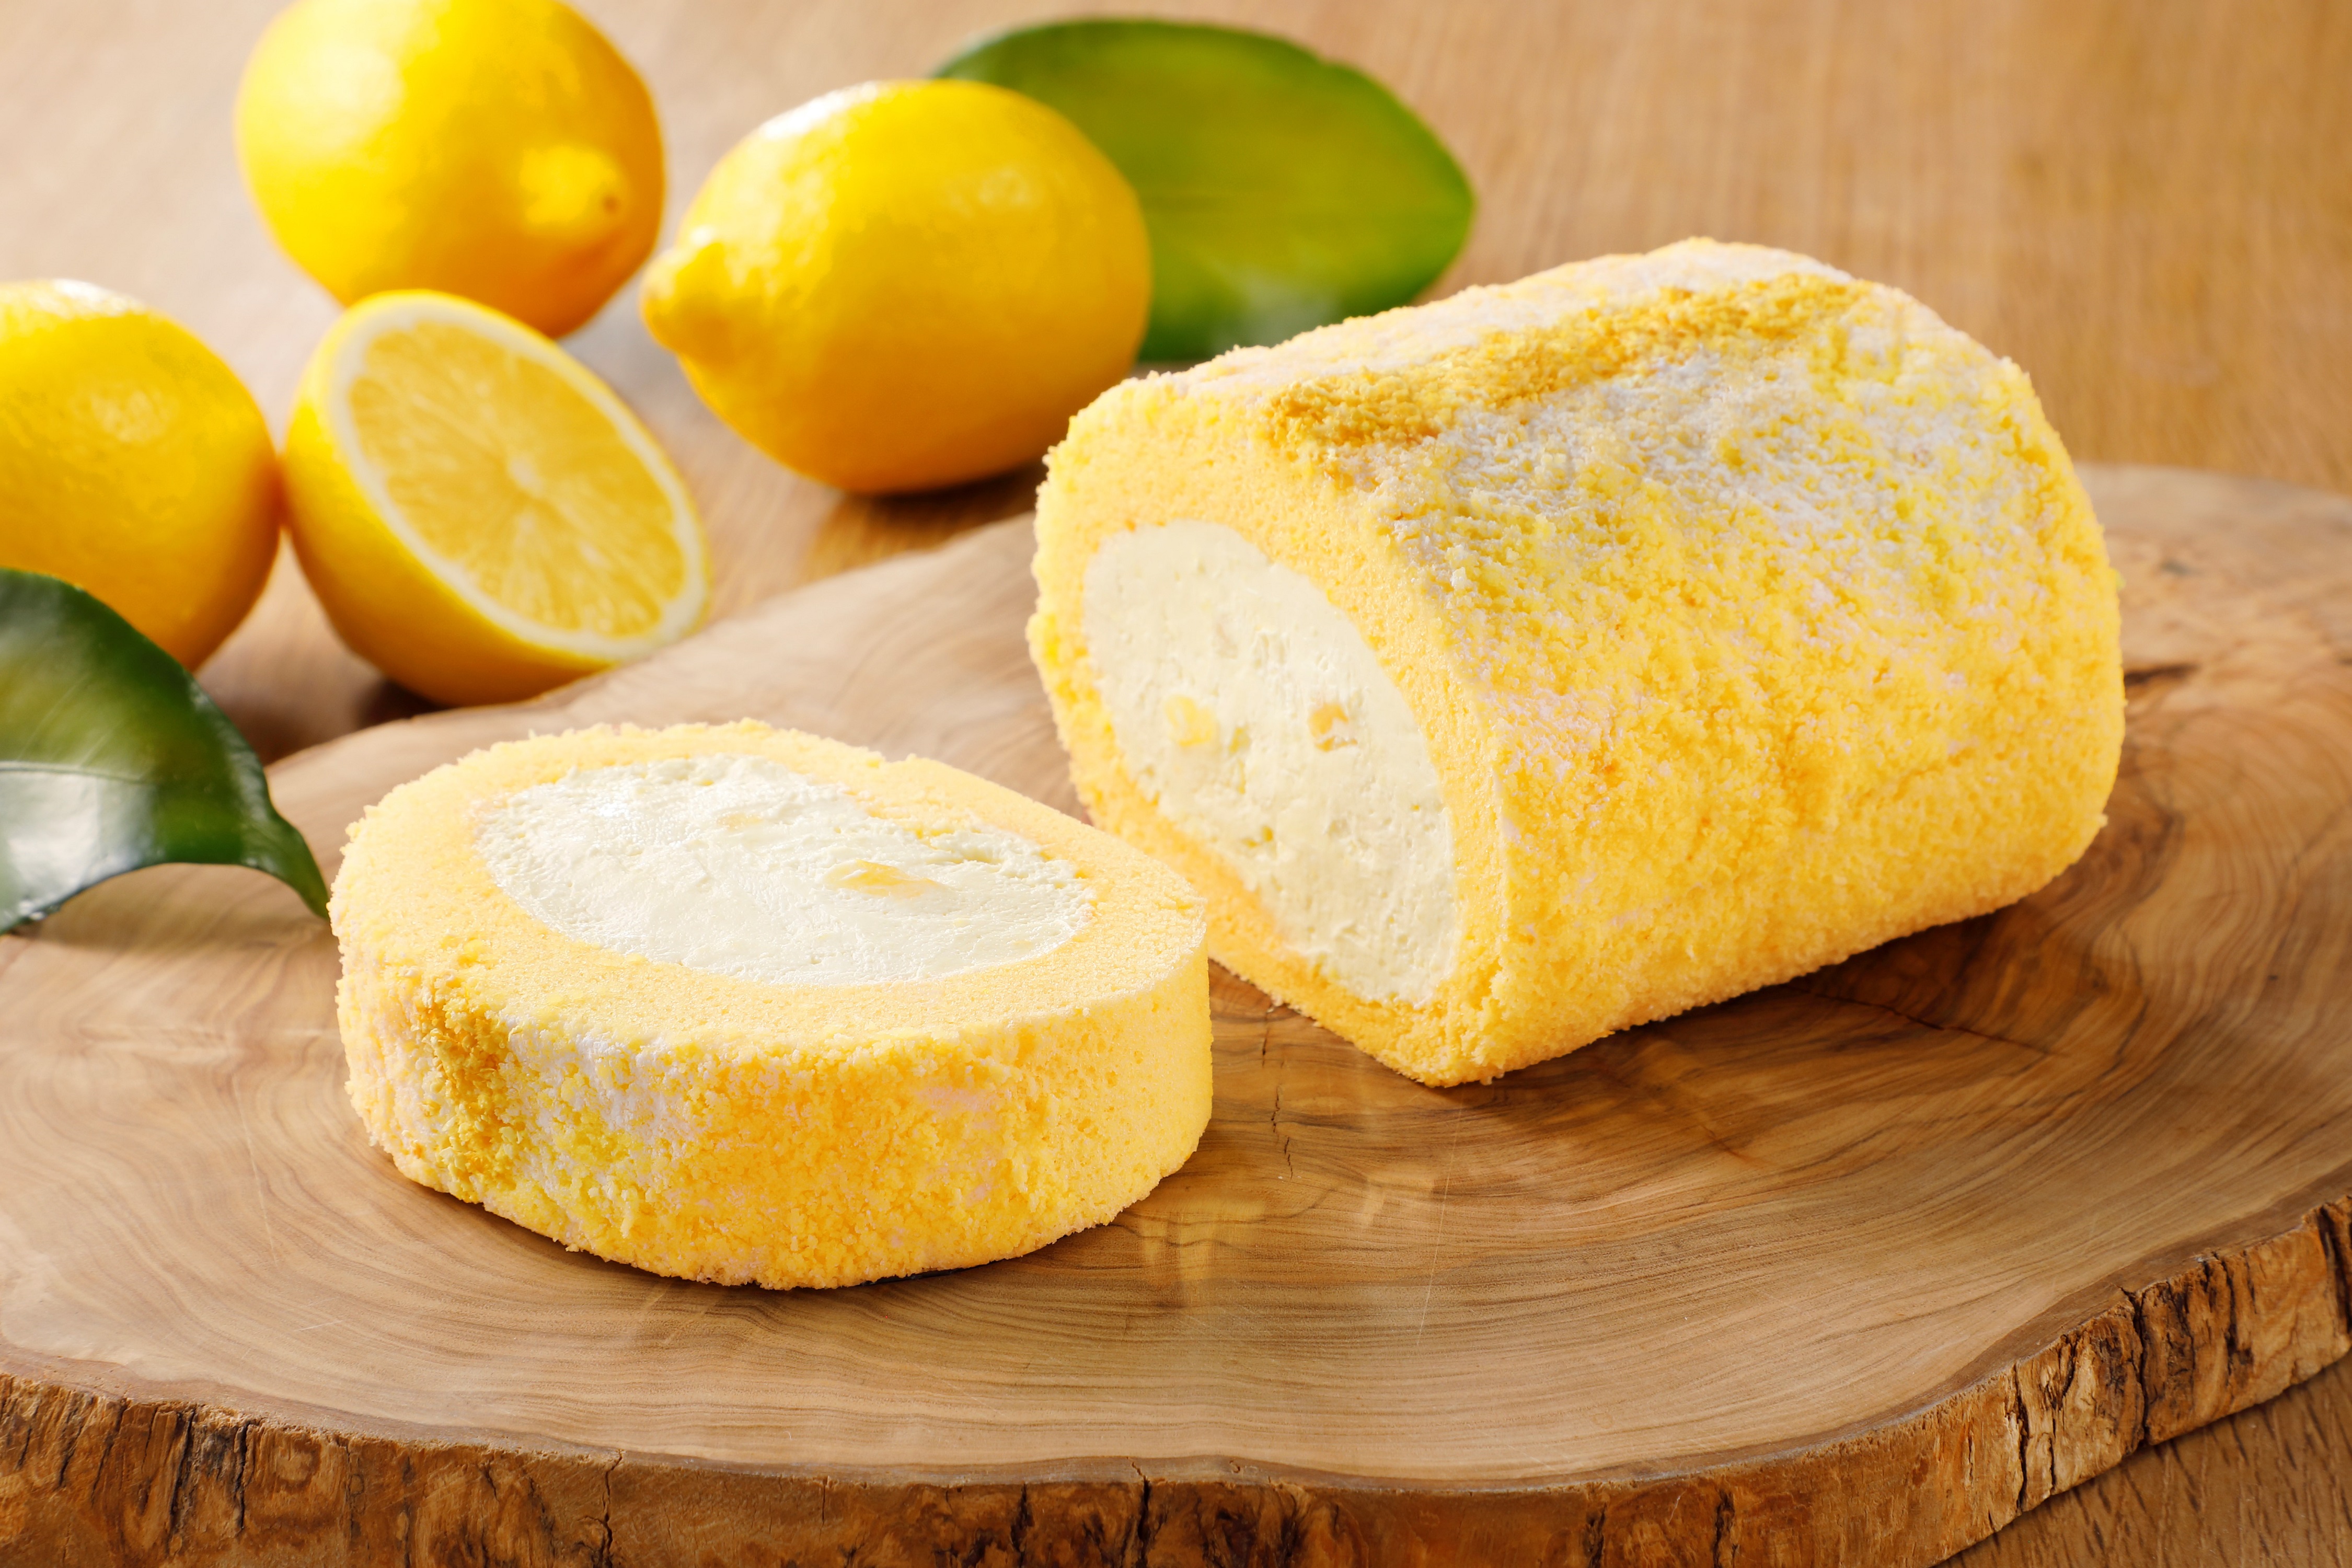 レモンスイーツ専門店 レモンショップ By Francais より 新商品 レモンチーズロール を発売致します 株式会社シュクレイのプレスリリース